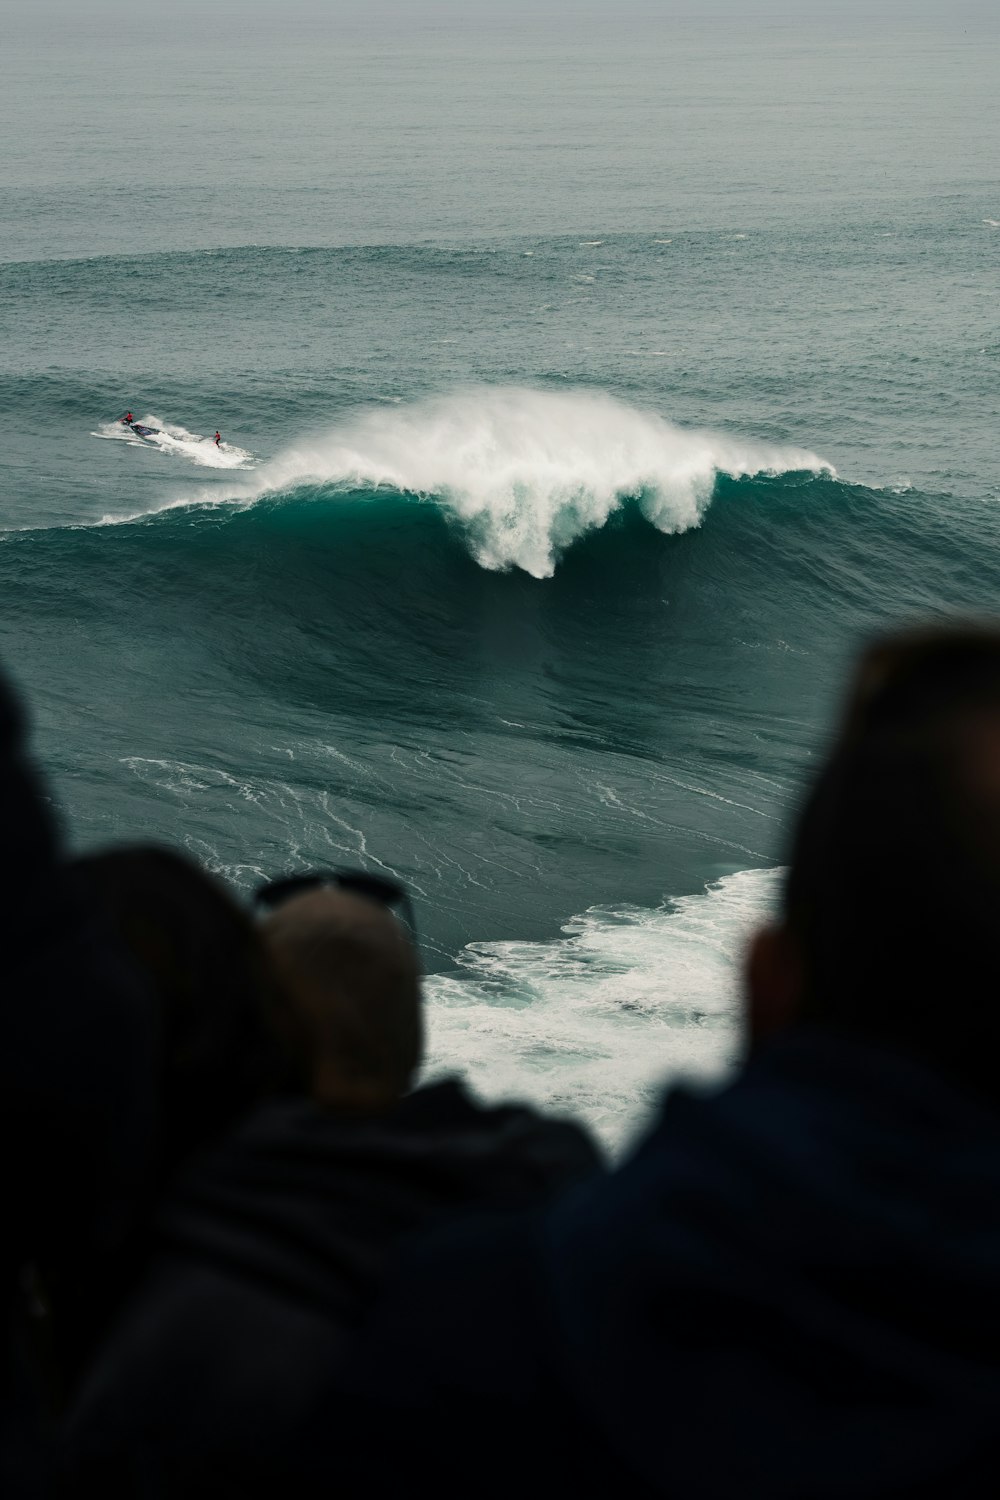 um homem surfando uma onda em cima de uma prancha de surfe